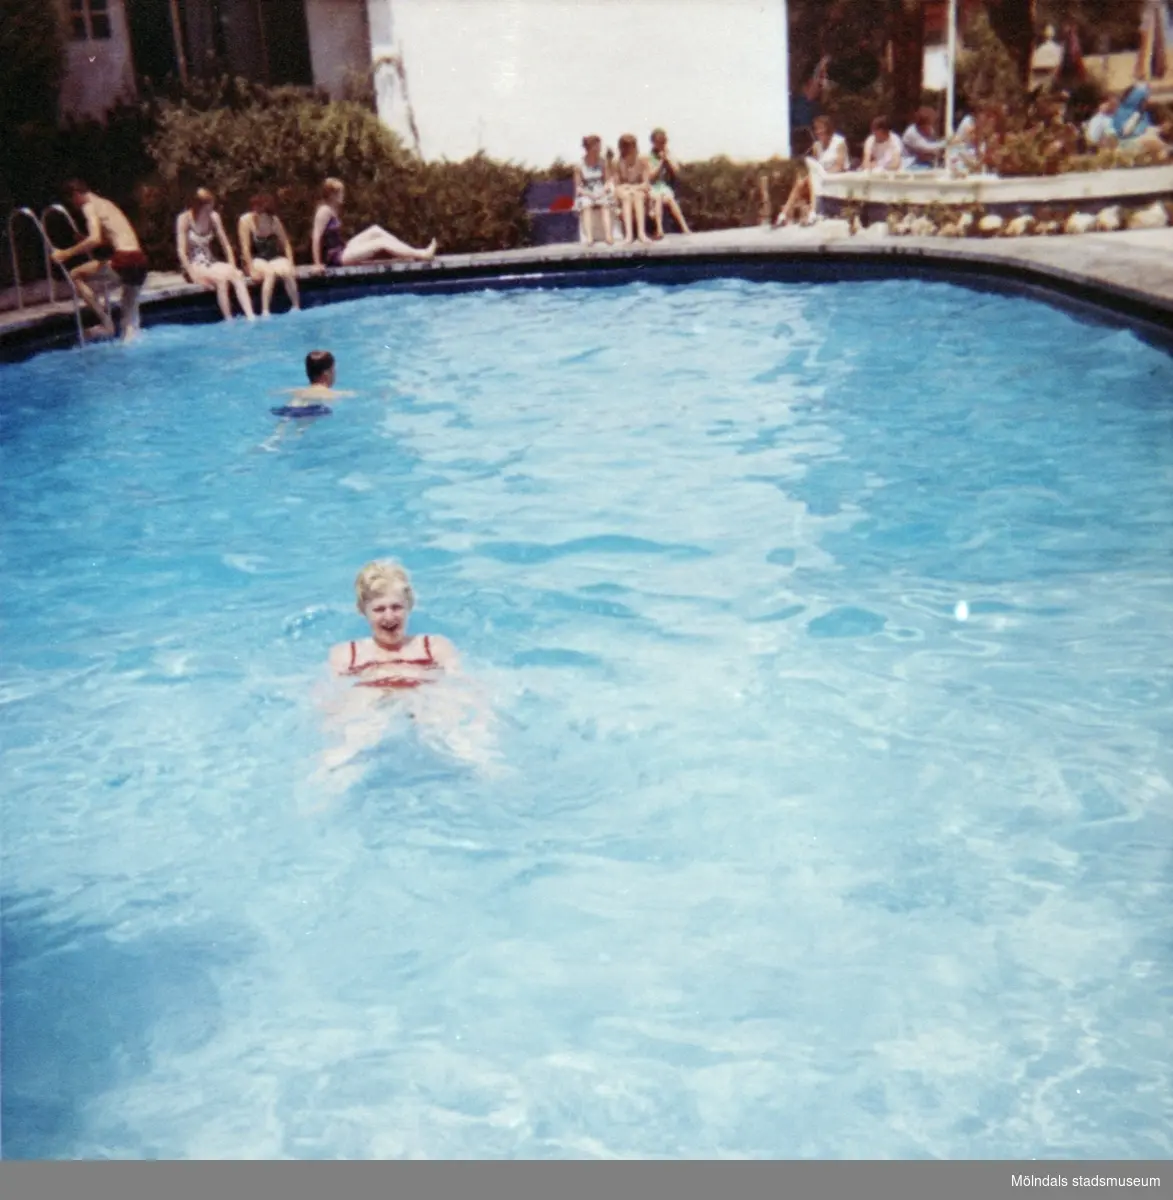 Elever, från Skolhemmet Stretered, badar och simmar i en pool. 1970-tal.